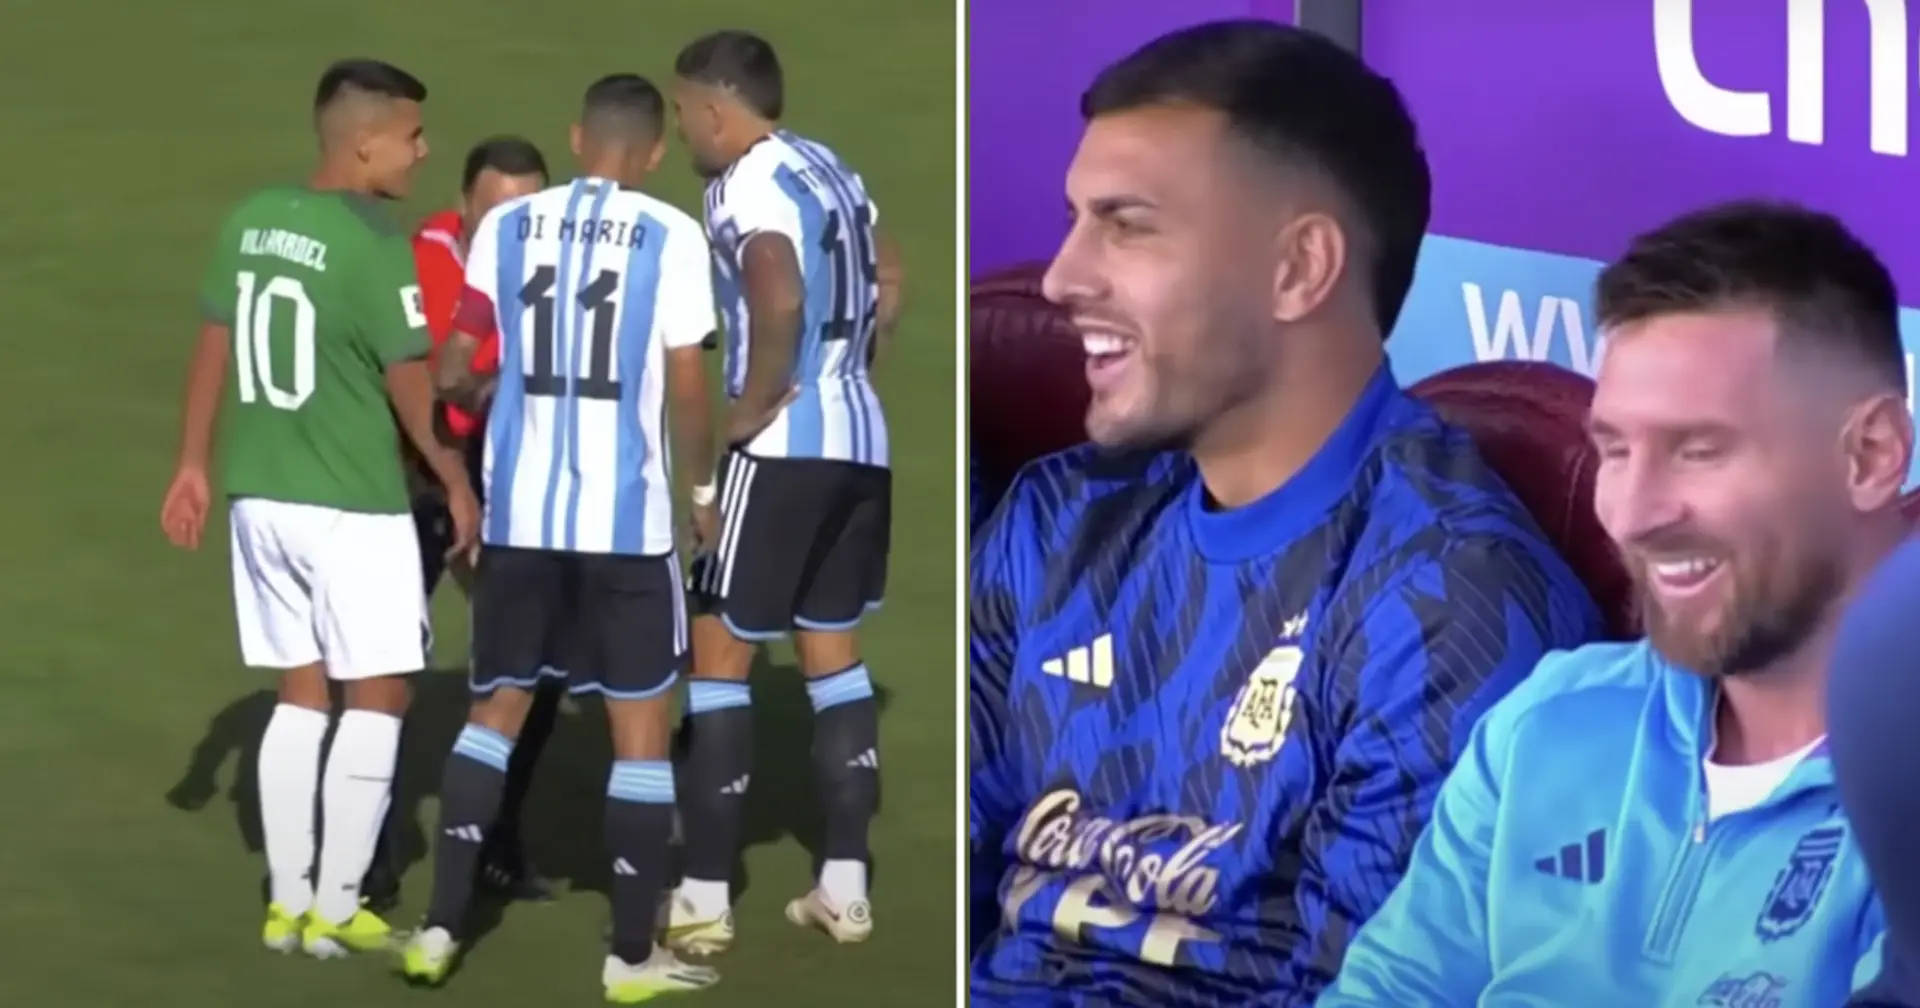 Pourquoi Messi était sur le banc de l'Argentine s'il ne figurait pas sur la liste des joueurs pour le match vs Bolivie ? Explication